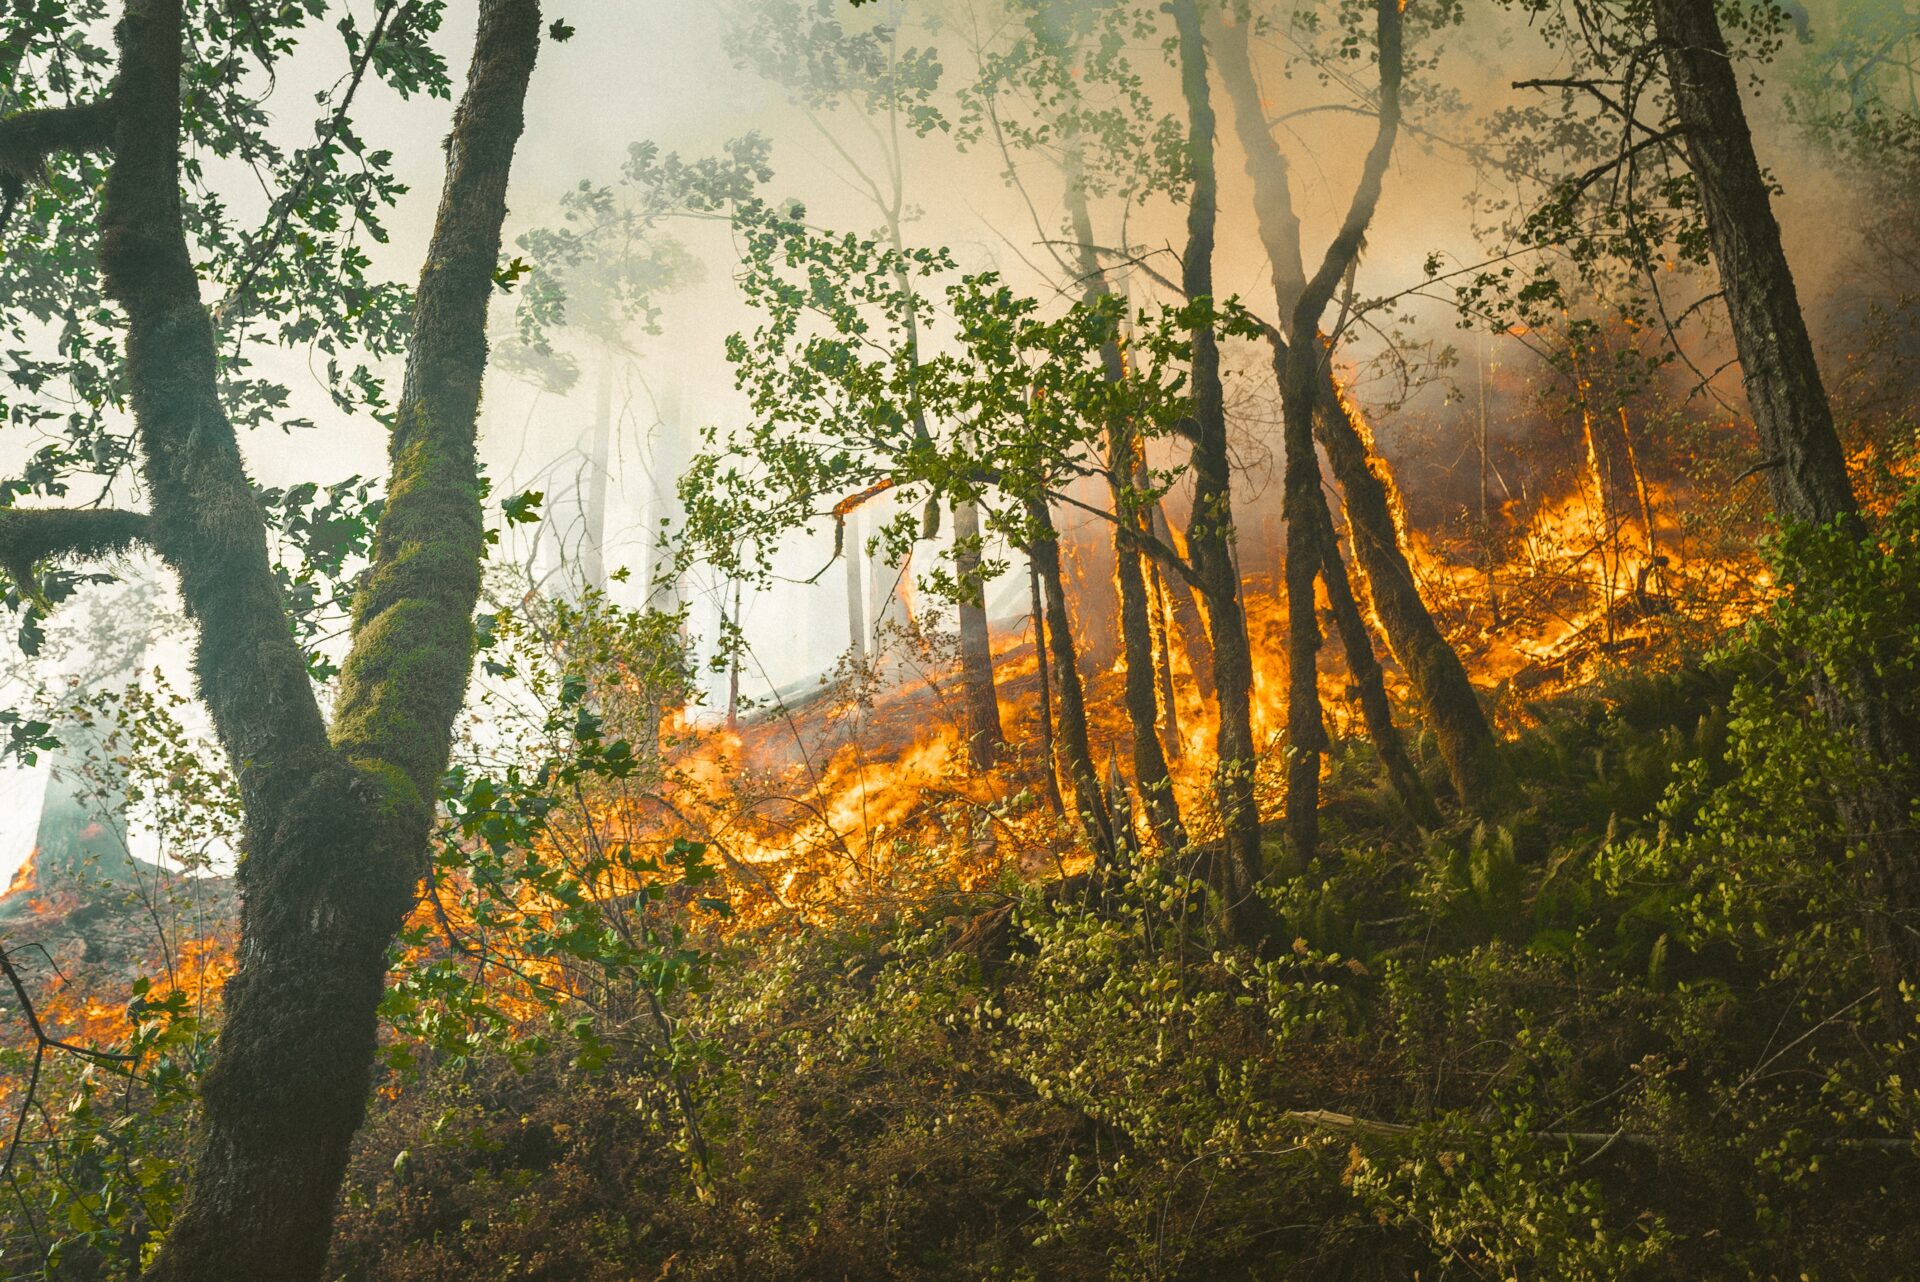 Dahuaの山林火事検知ソリューションが山火事の防止に貢献